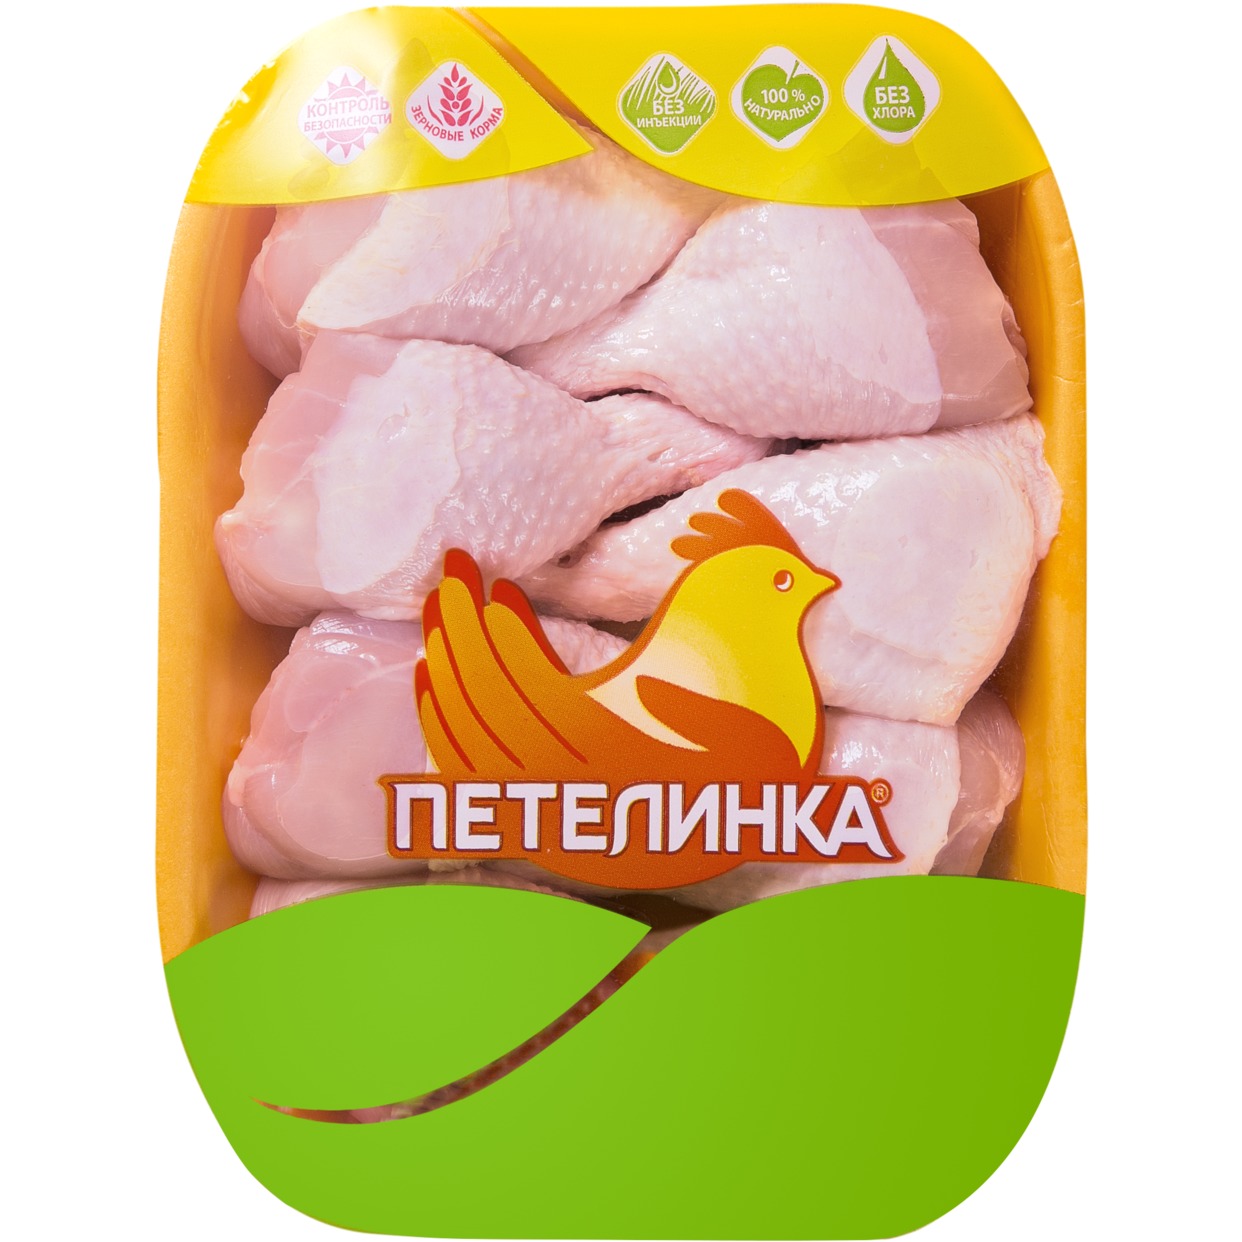 Голень цыпленка, охлажденная, Петелинка, 1 кг